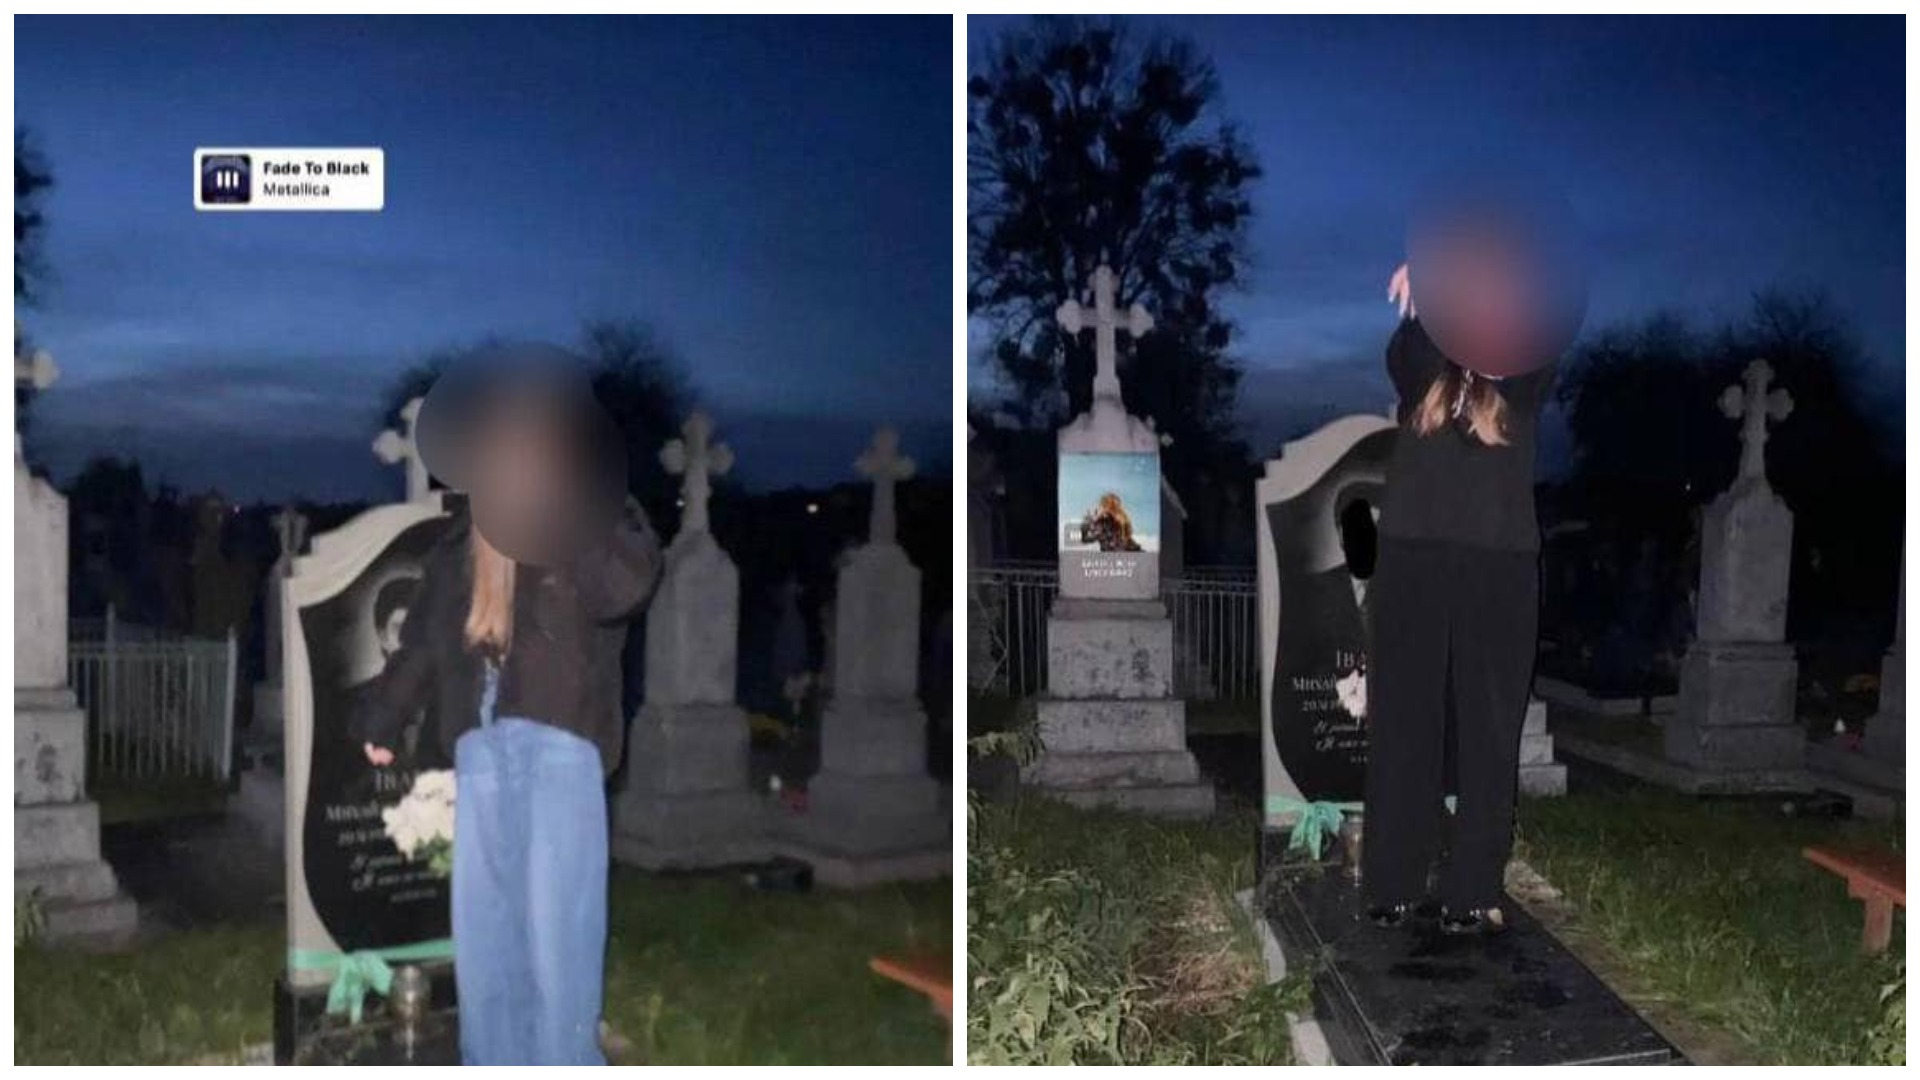 У Нововолинську неповнолітні влаштували фотосесію на кладовищі (фото)